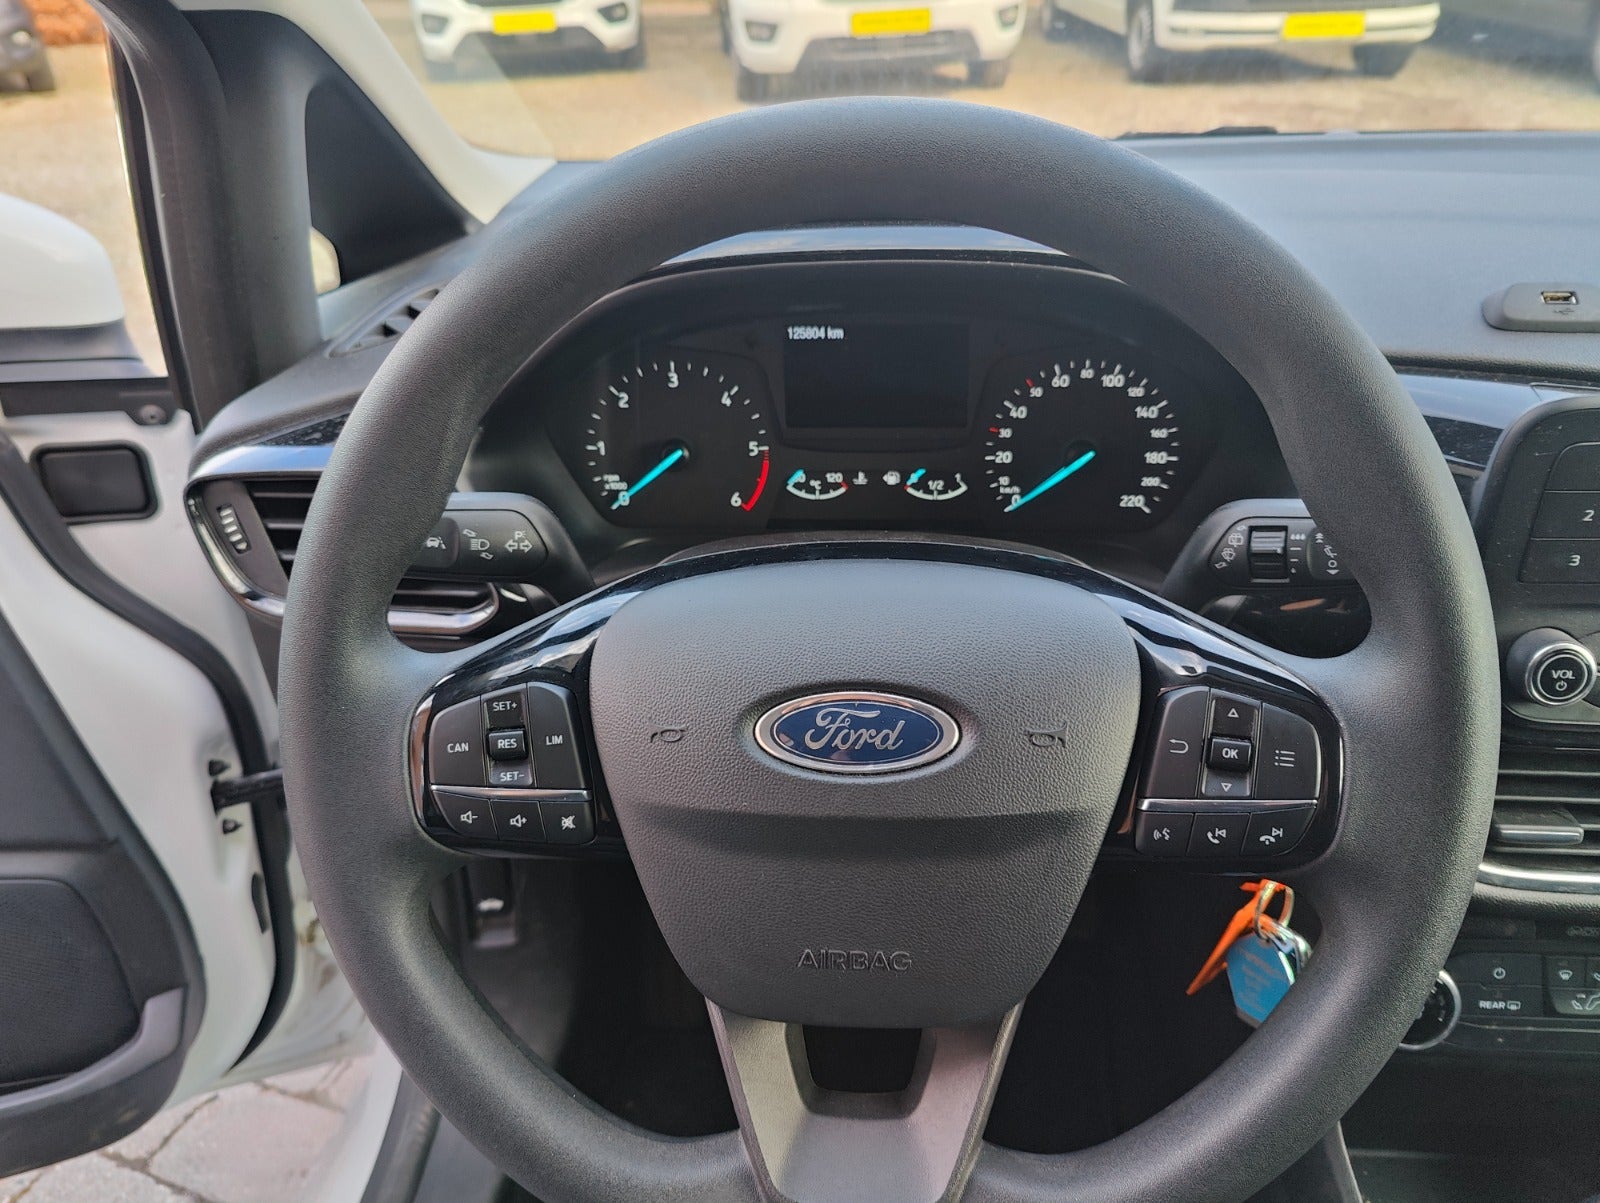 Ford Fiesta 1,5 TDCi 85 Trend Van Diesel modelår 2018 Hvid km